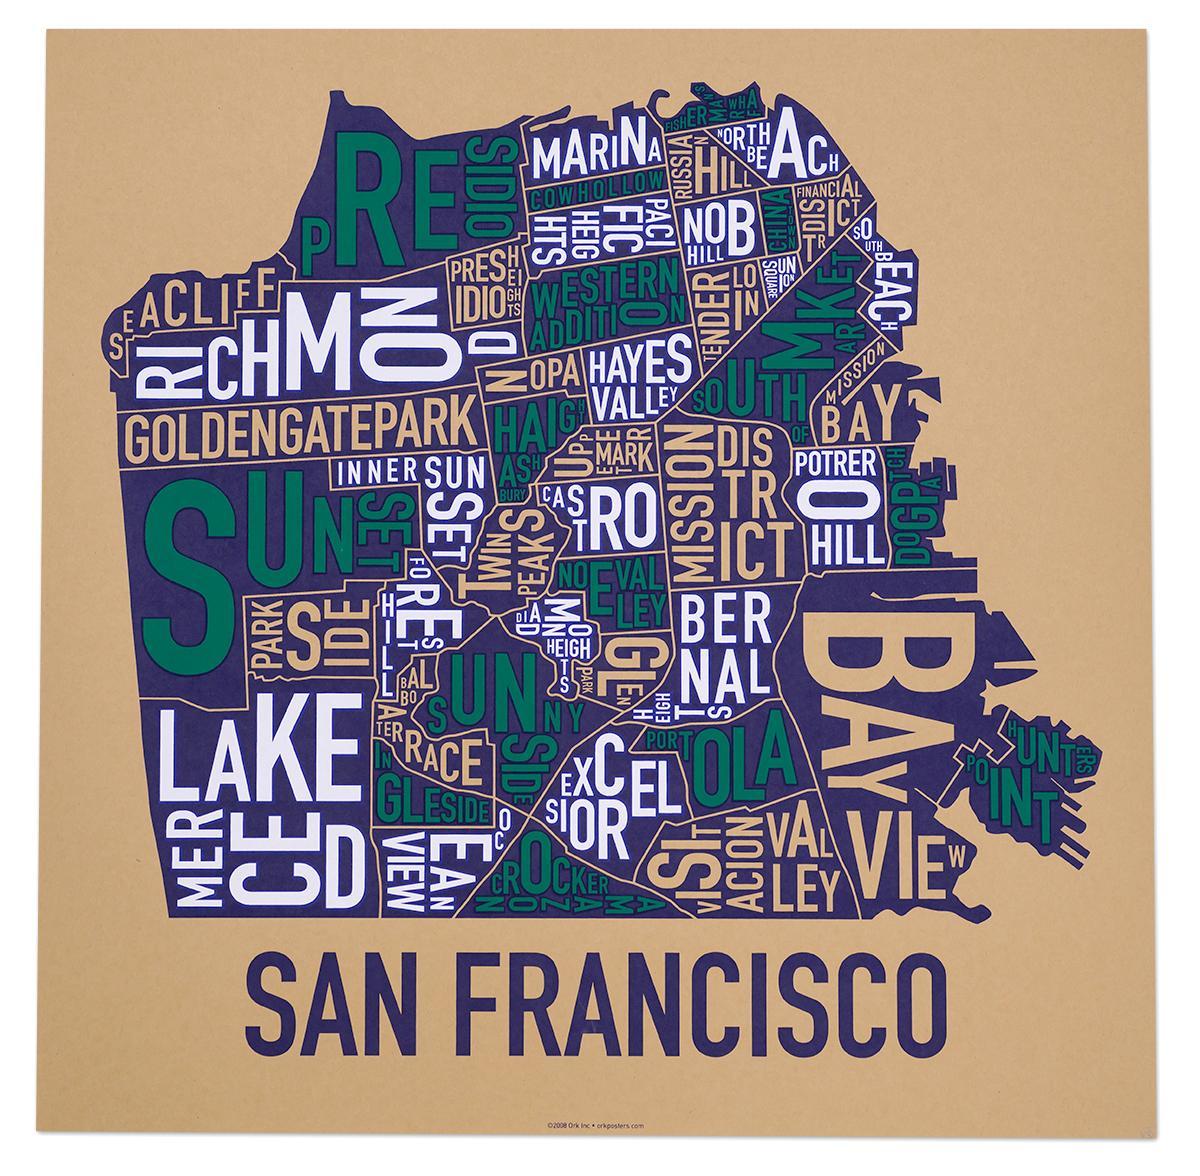 Շրջապատը Սան Ֆրանցիսկոյում քարտեզ պաստառը